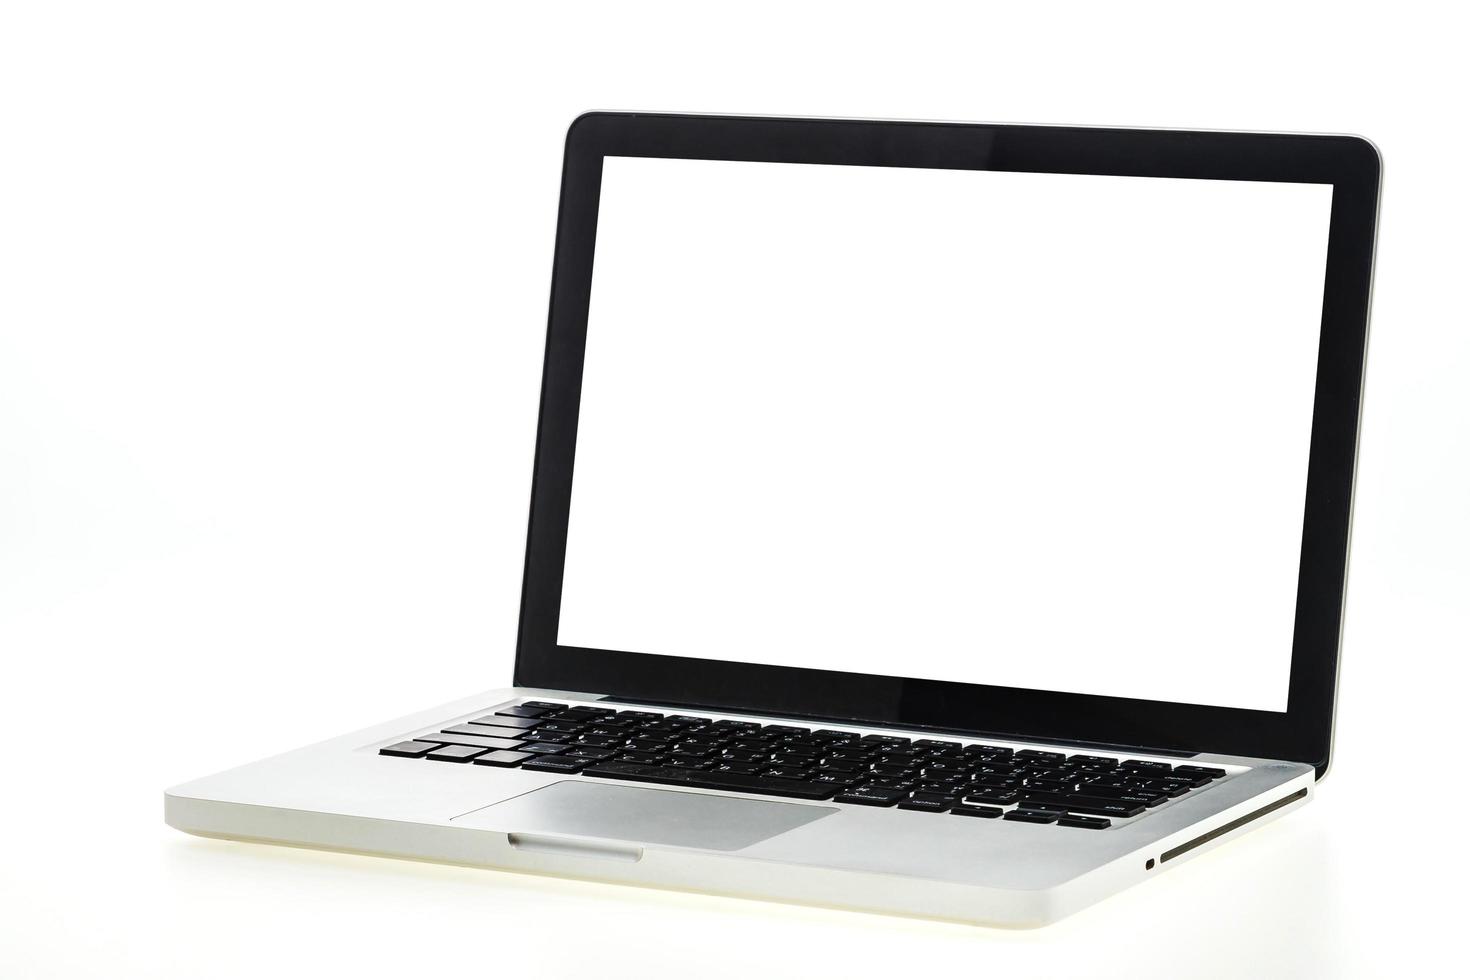 laptop isolado no branco foto